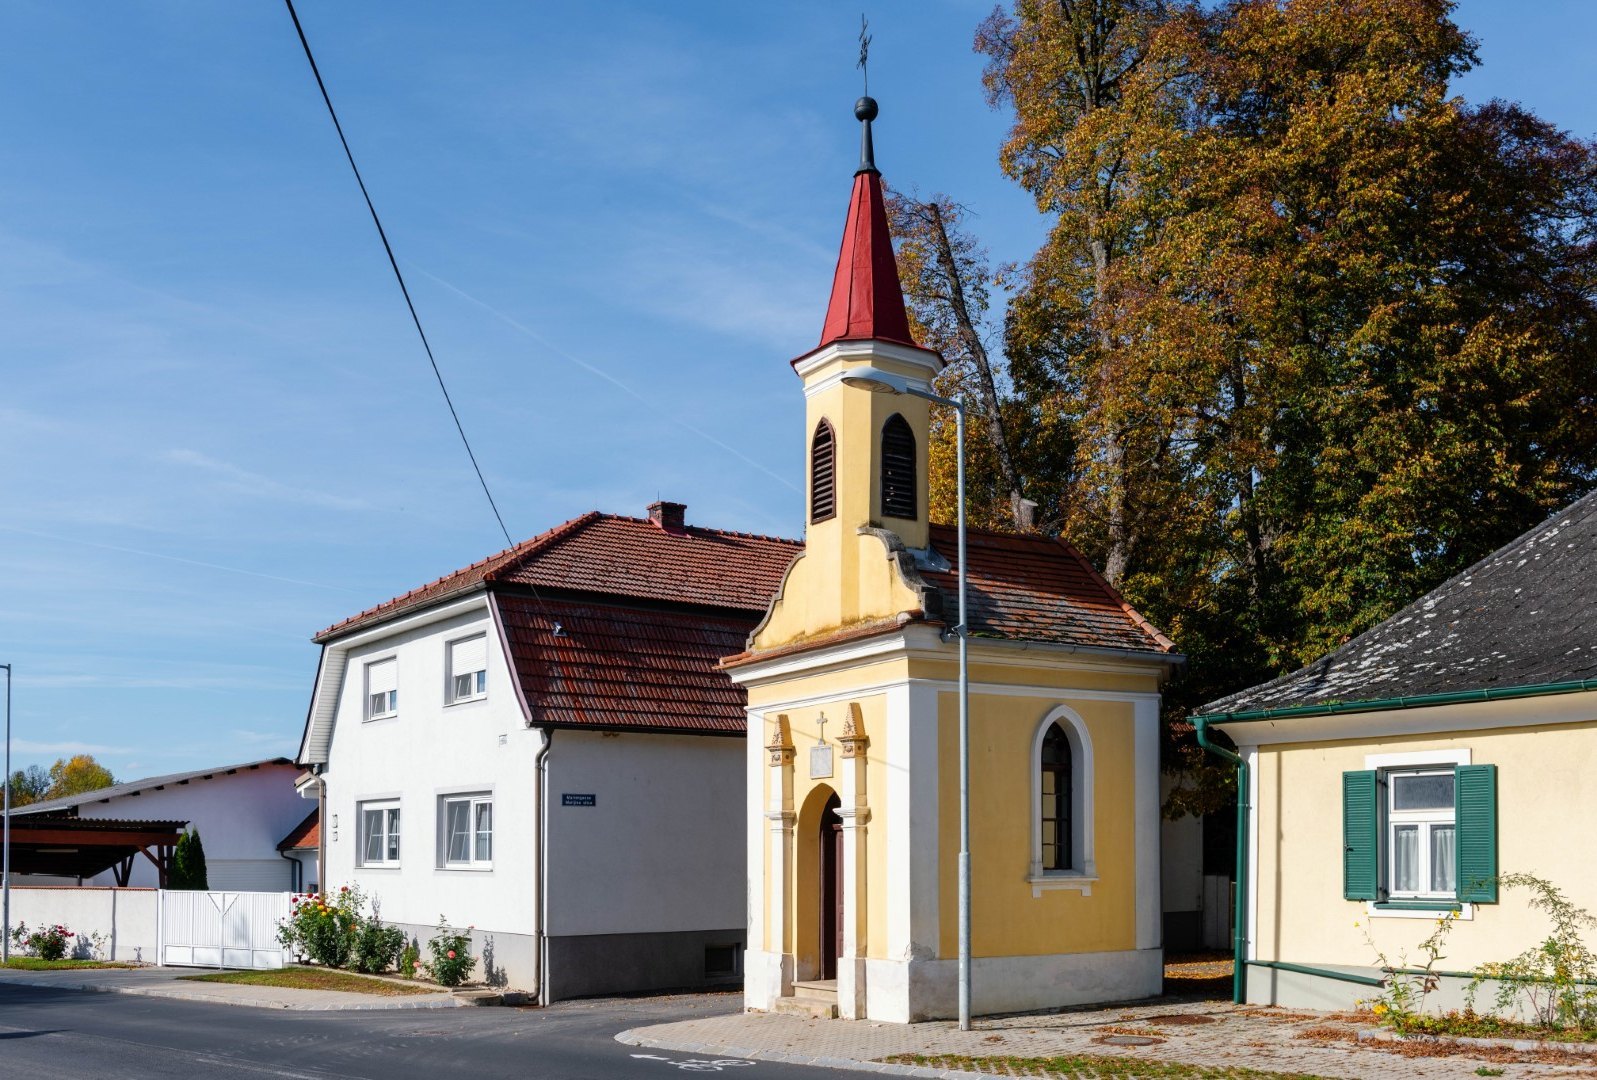 Lourdeskapelle in Großwarasdorf